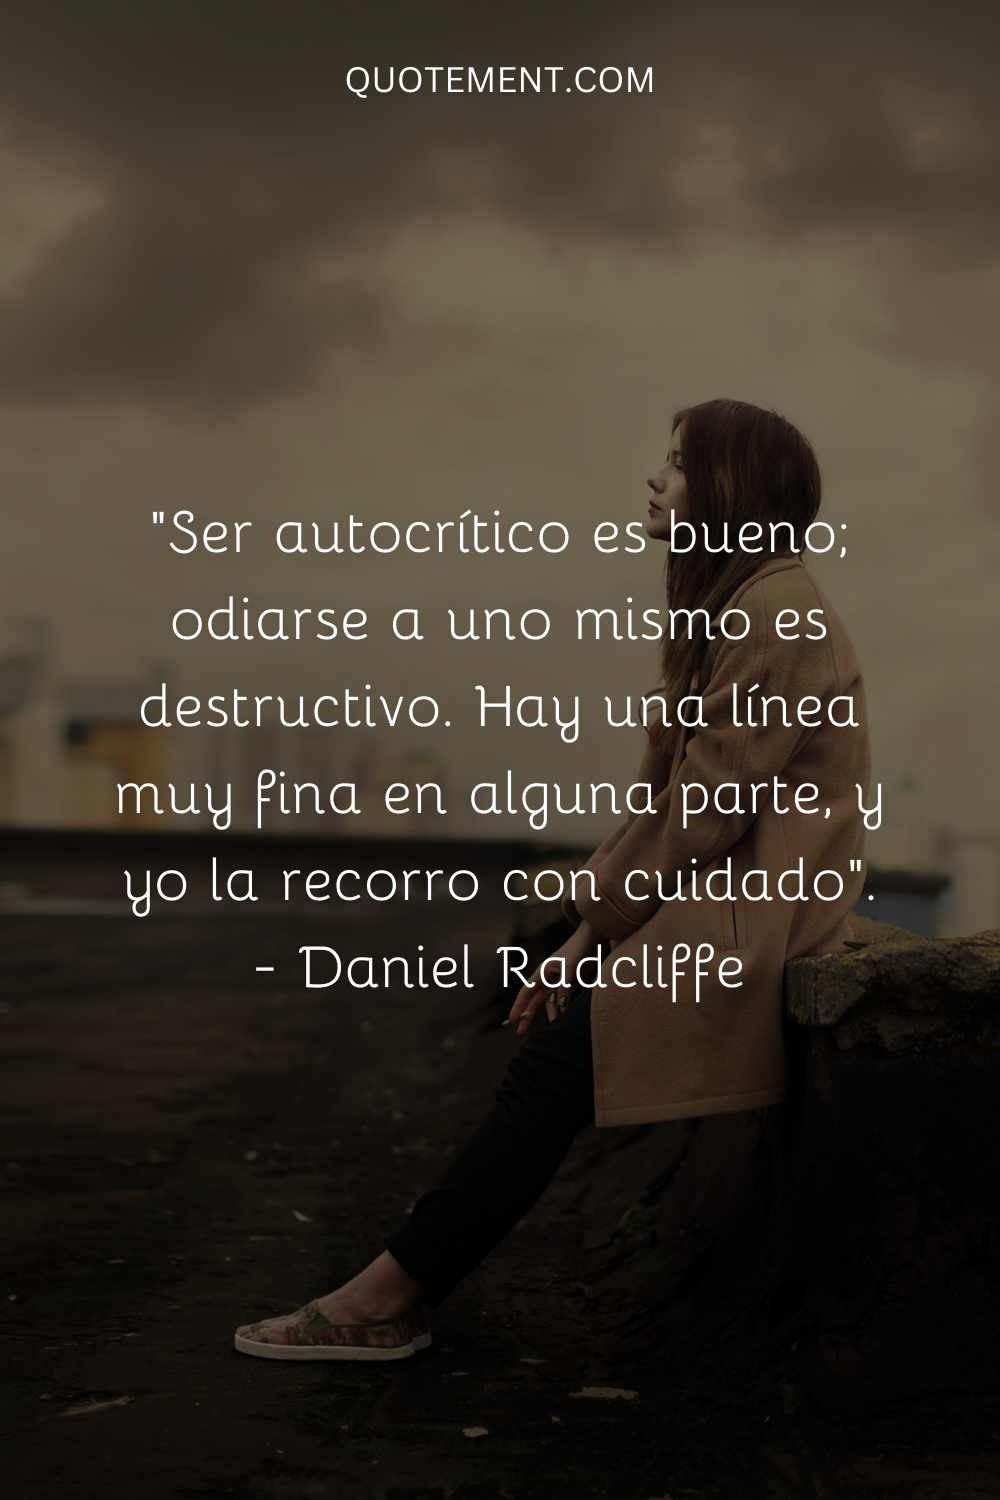 "Ser autocrítico es bueno; odiarse a uno mismo es destructivo. Hay una línea muy fina en alguna parte, y yo la piso con cuidado". - Daniel Radcliffe